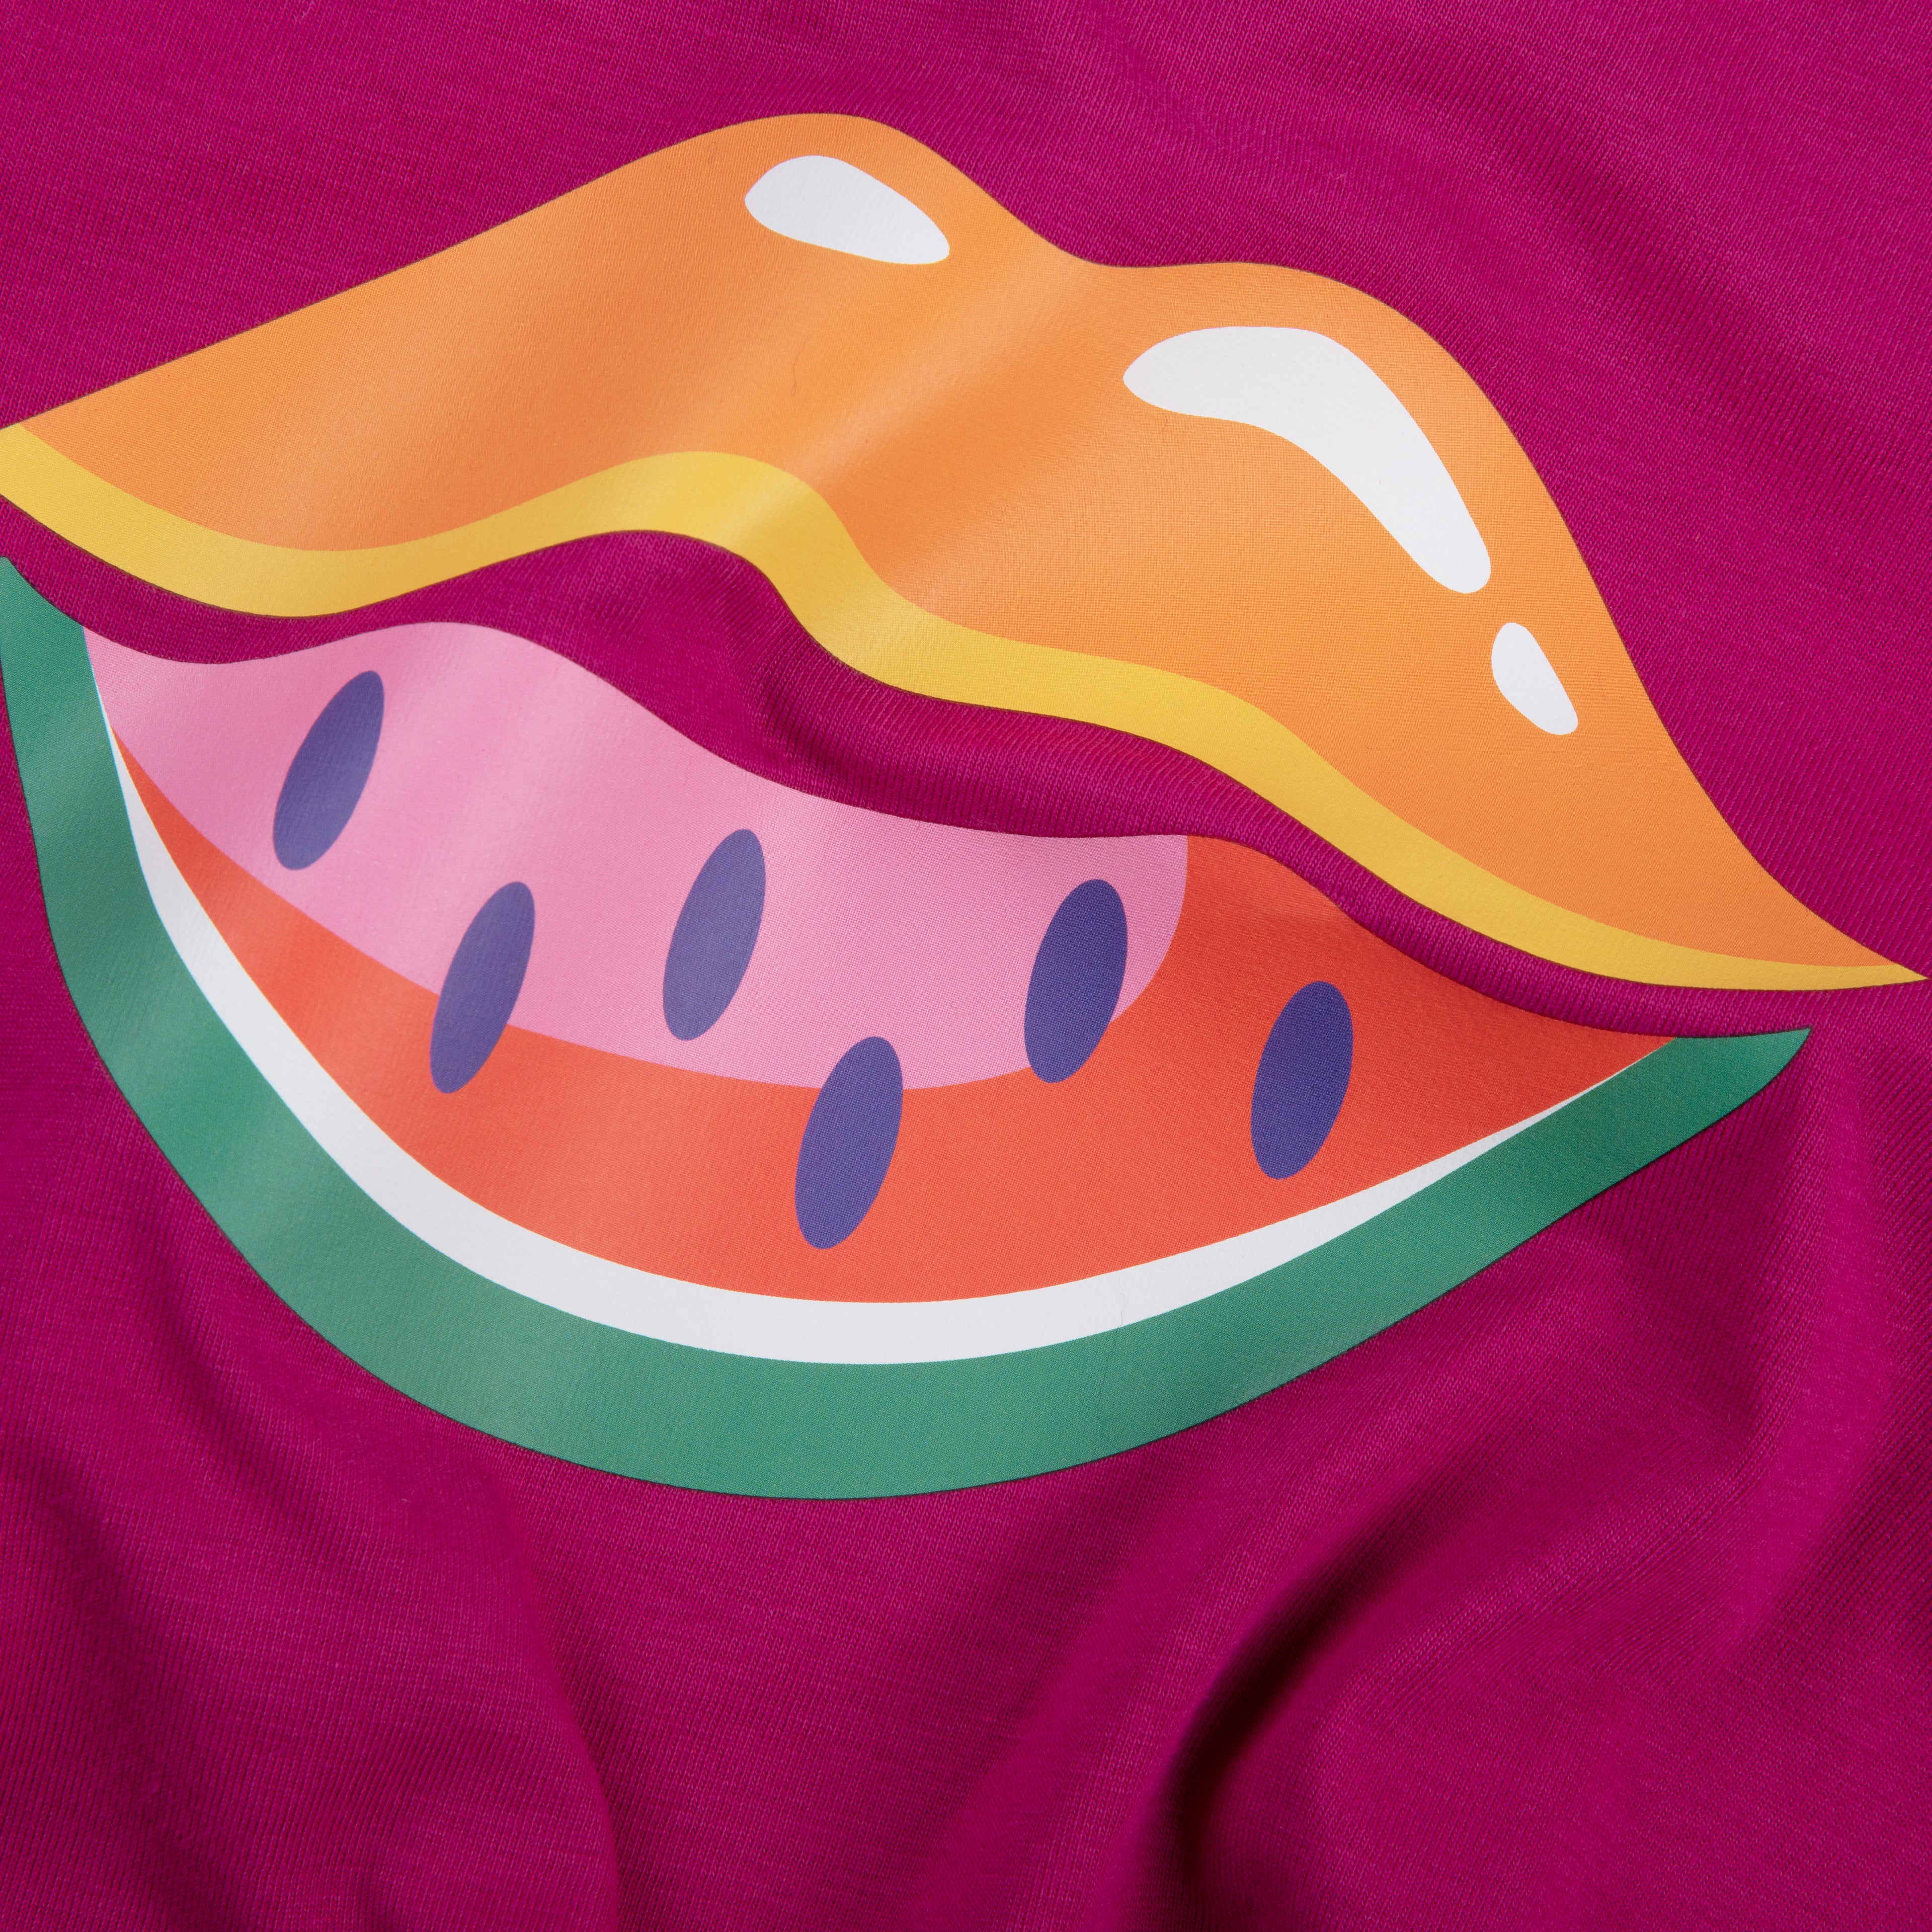 Melon Lips - Who said